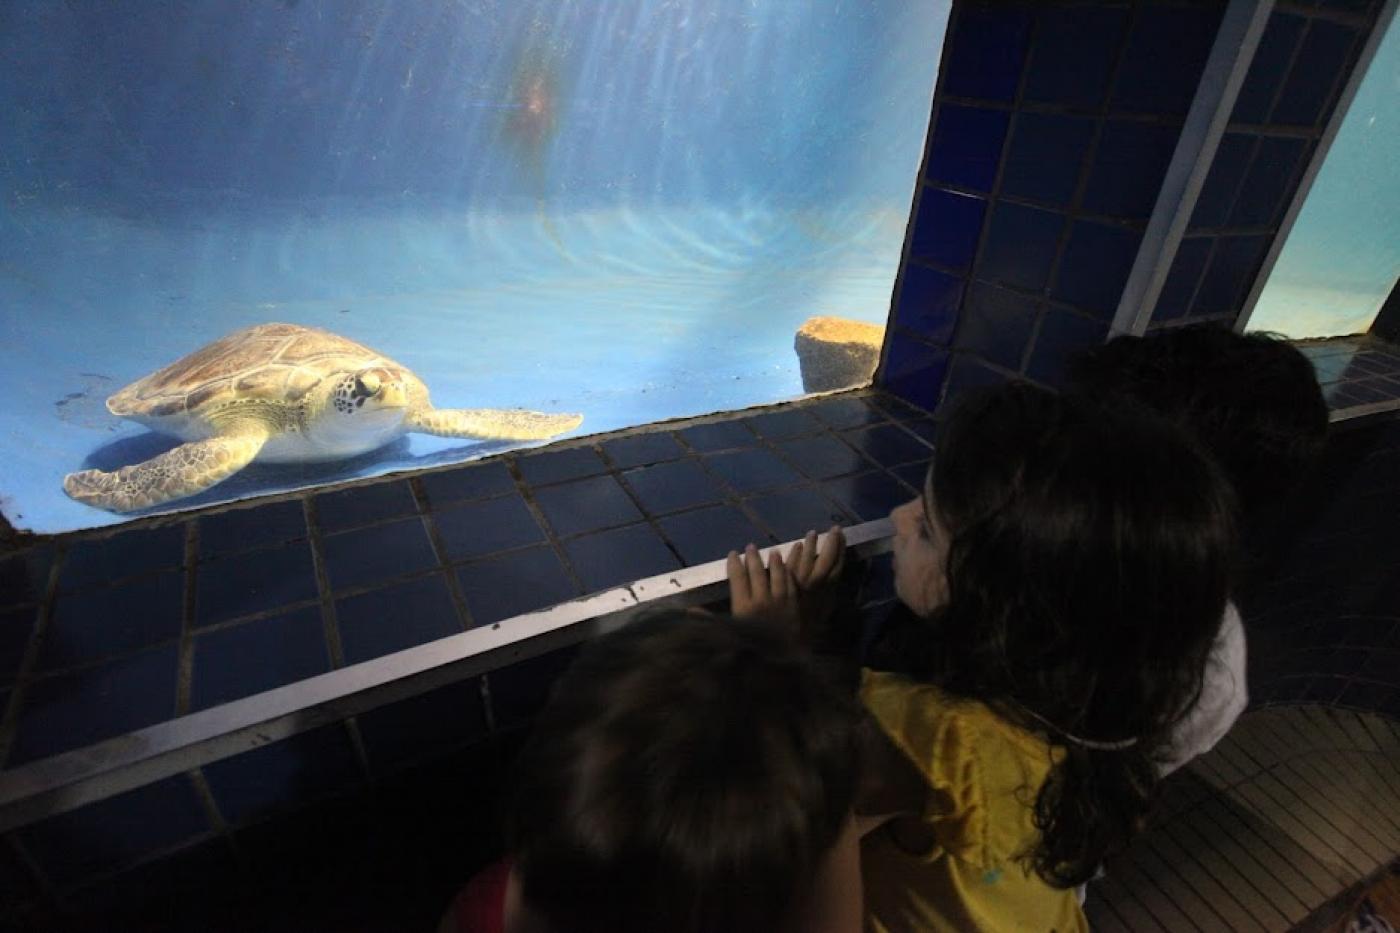 crianças observam tanque no aquário com tartaruga. #paratodosverem 